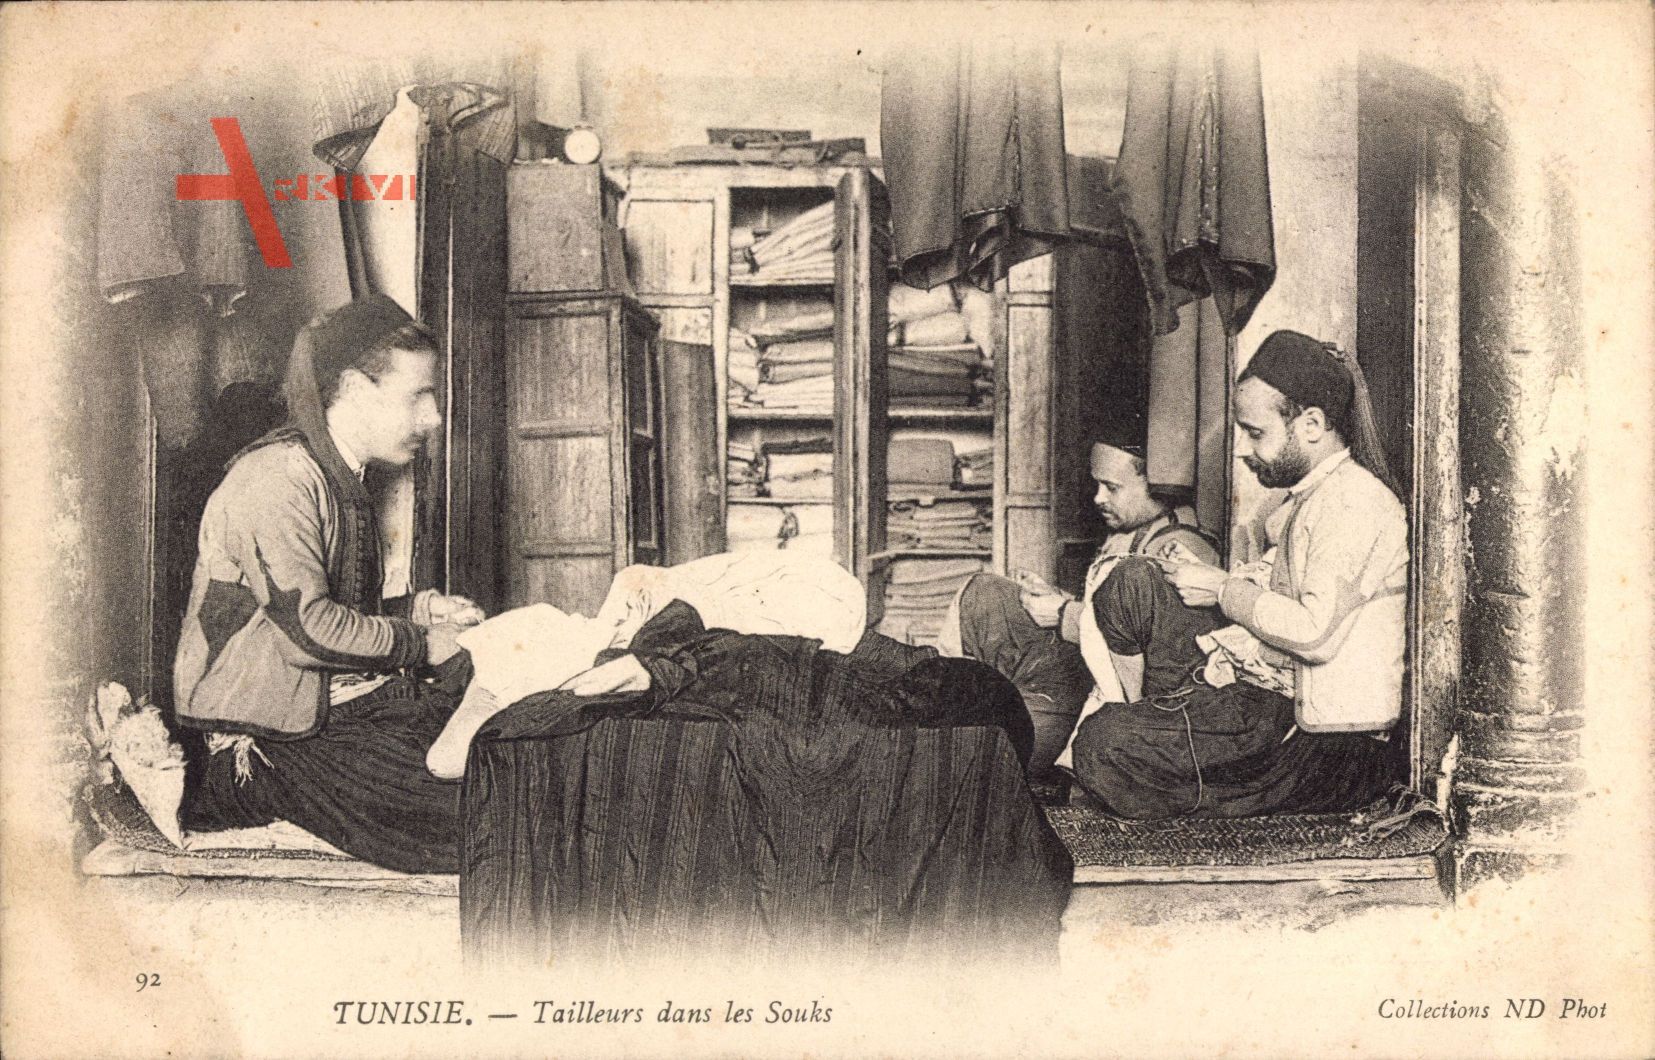 Tunesien, Tailleurs dans les Souks, Tunesische Schneider, Manufaktur